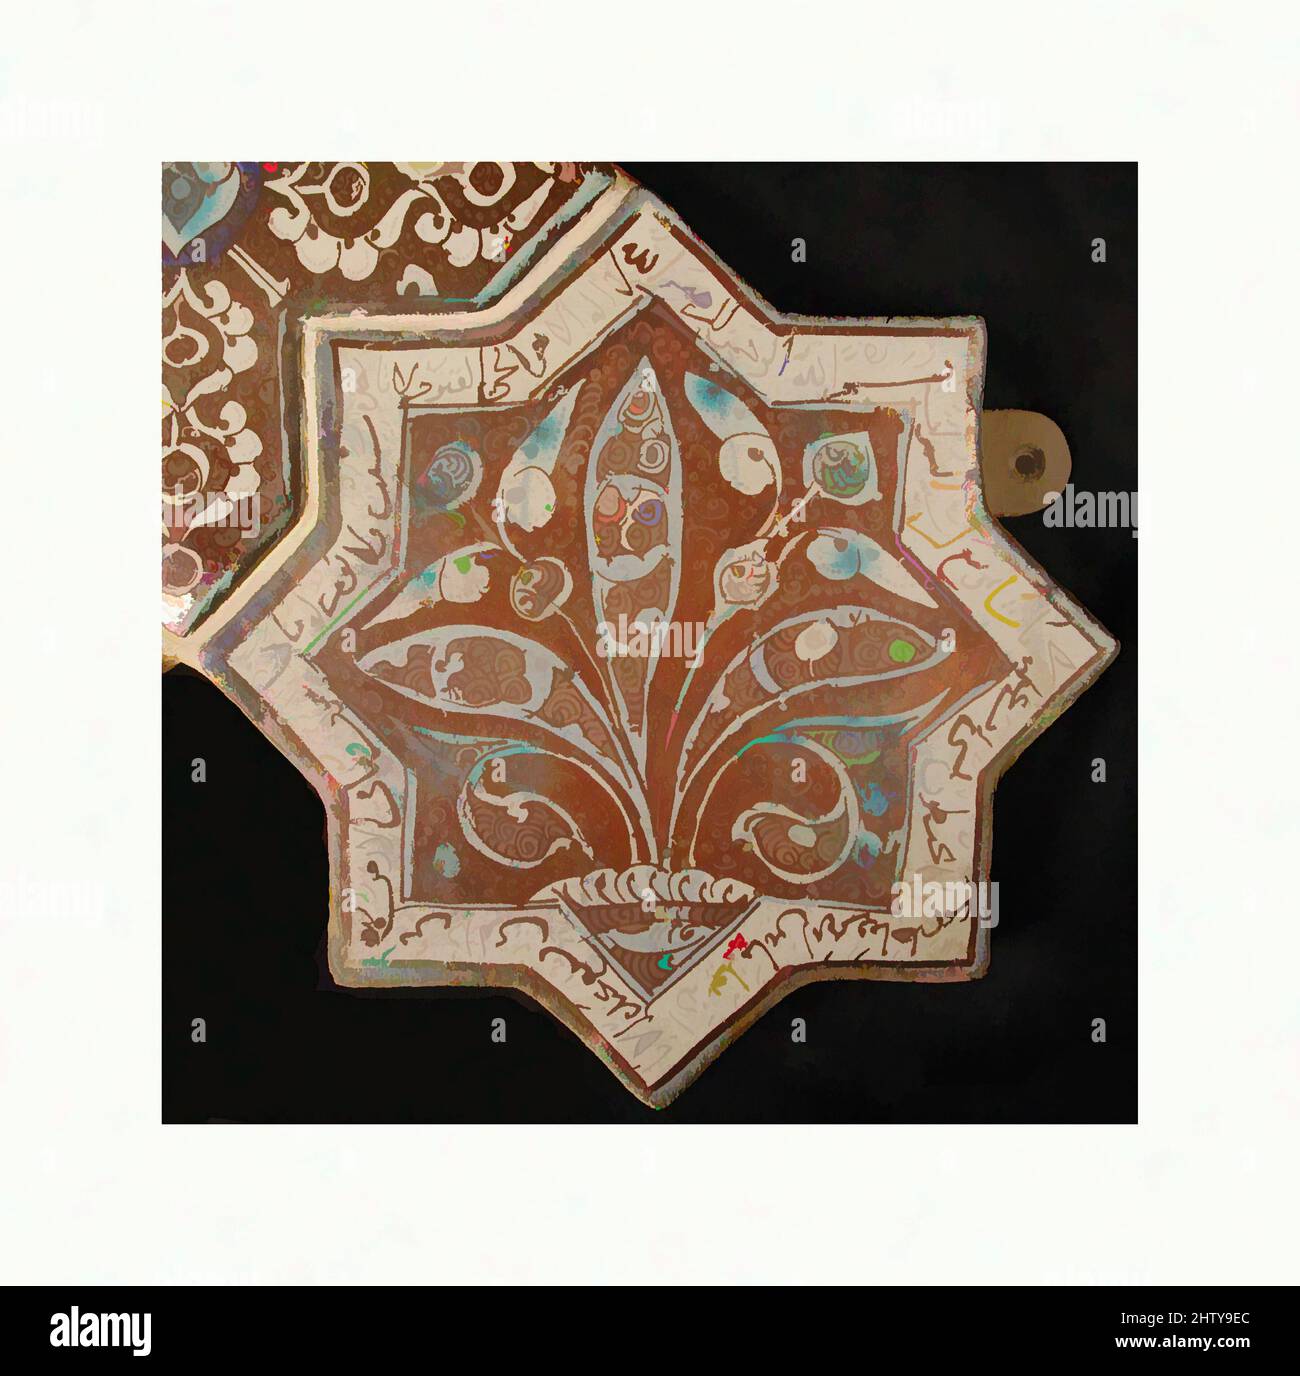 Kunst inspiriert von sternförmigen Fliesen, 13.–14. Jahrhundert, hergestellt im Iran, wahrscheinlich Kashan, Stonepaste; Inglaze in blau und türkis und glänzend auf opaker weißer Glasur lackiert, 8 x 8 Zoll (20,3 x 20,3 cm), Keramik-Fliesen, achtspitzige sternförmige Fliesen tragen oft Arabisch und Persisch, Classic Works modernisiert von Artotop mit einem Schuss Moderne. Formen, Farbe und Wert, auffällige visuelle Wirkung auf Kunst. Emotionen durch Freiheit von Kunstwerken auf zeitgemäße Weise. Eine zeitlose Botschaft, die eine wild kreative neue Richtung verfolgt. Künstler, die sich dem digitalen Medium zuwenden und die Artotop NFT erschaffen Stockfoto